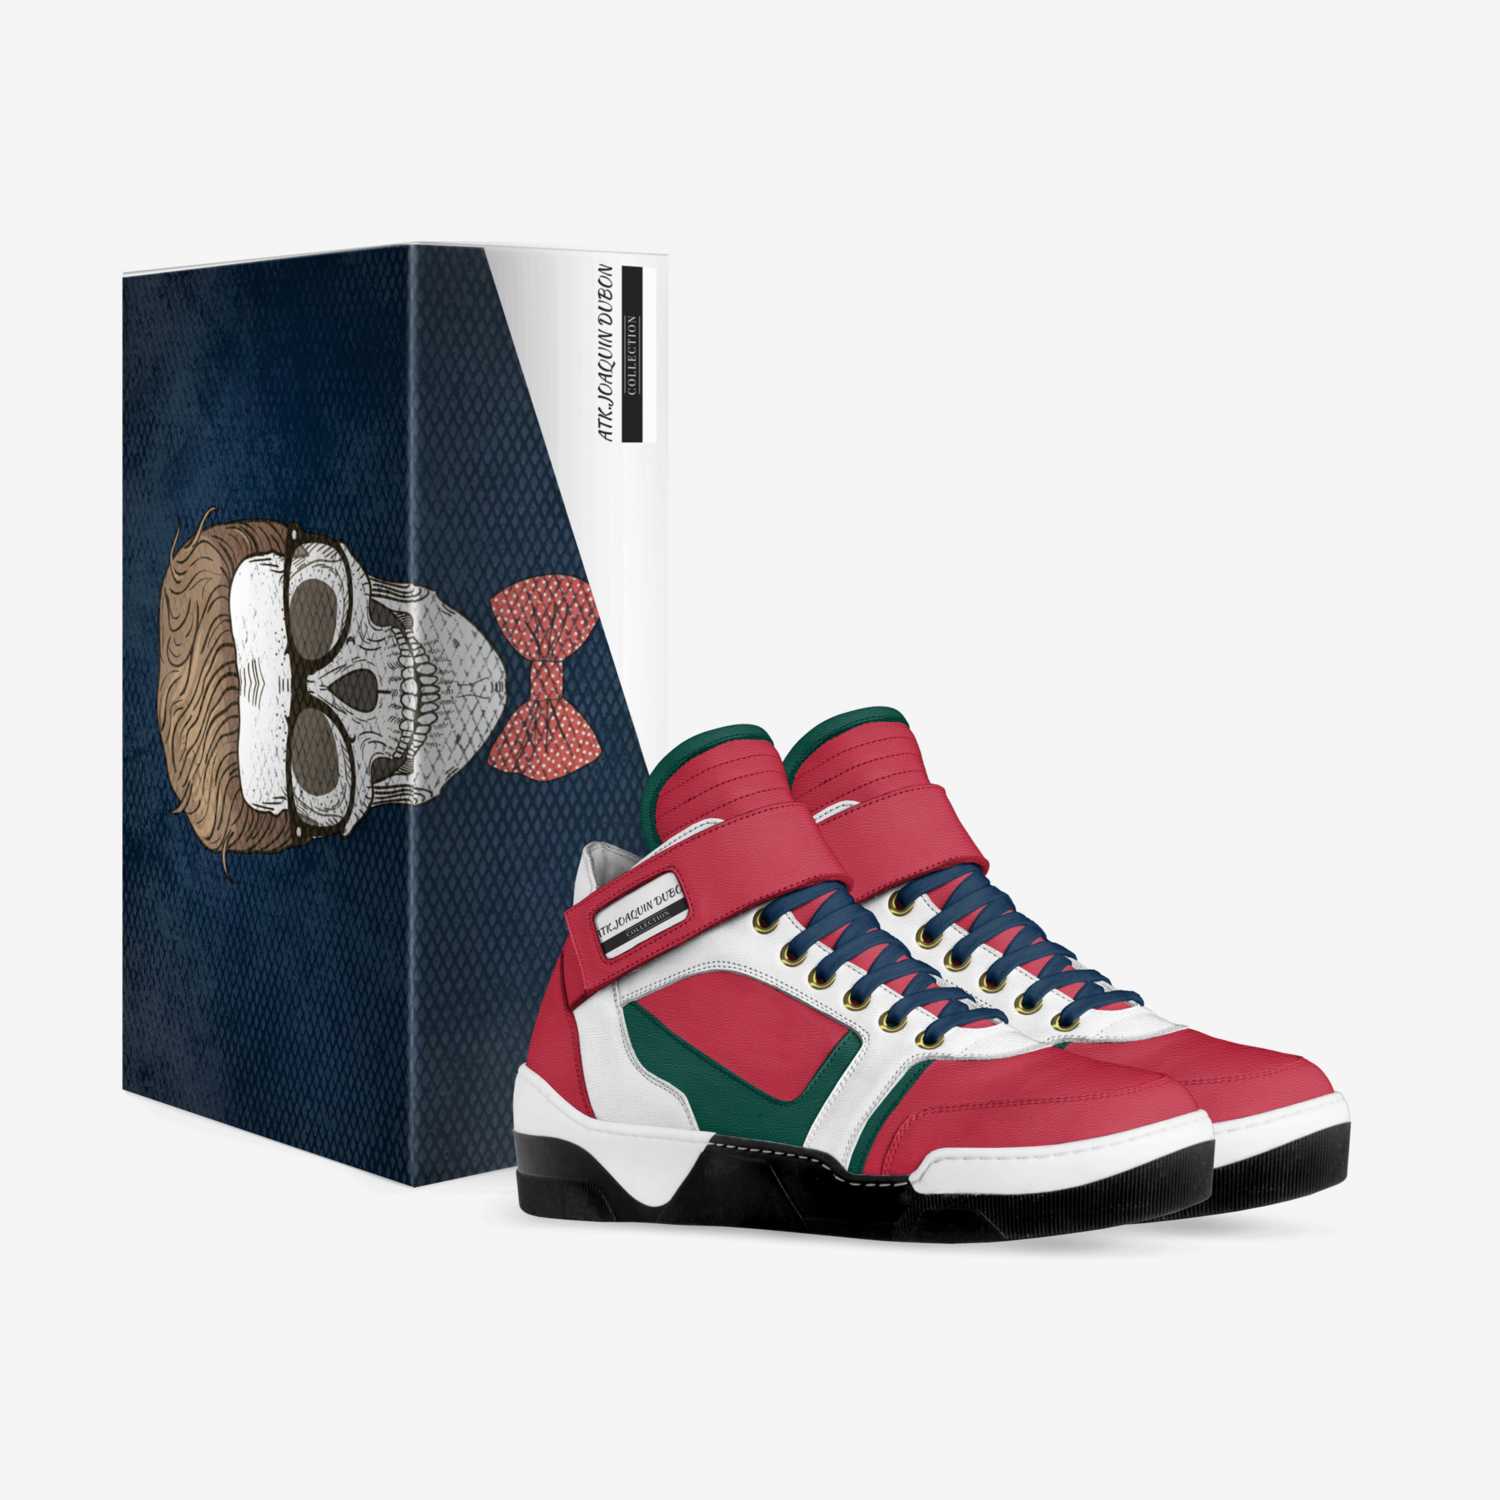 ATK.JOAQUIN DUBON custom made in Italy shoes by Joaquin Dubon | Box view